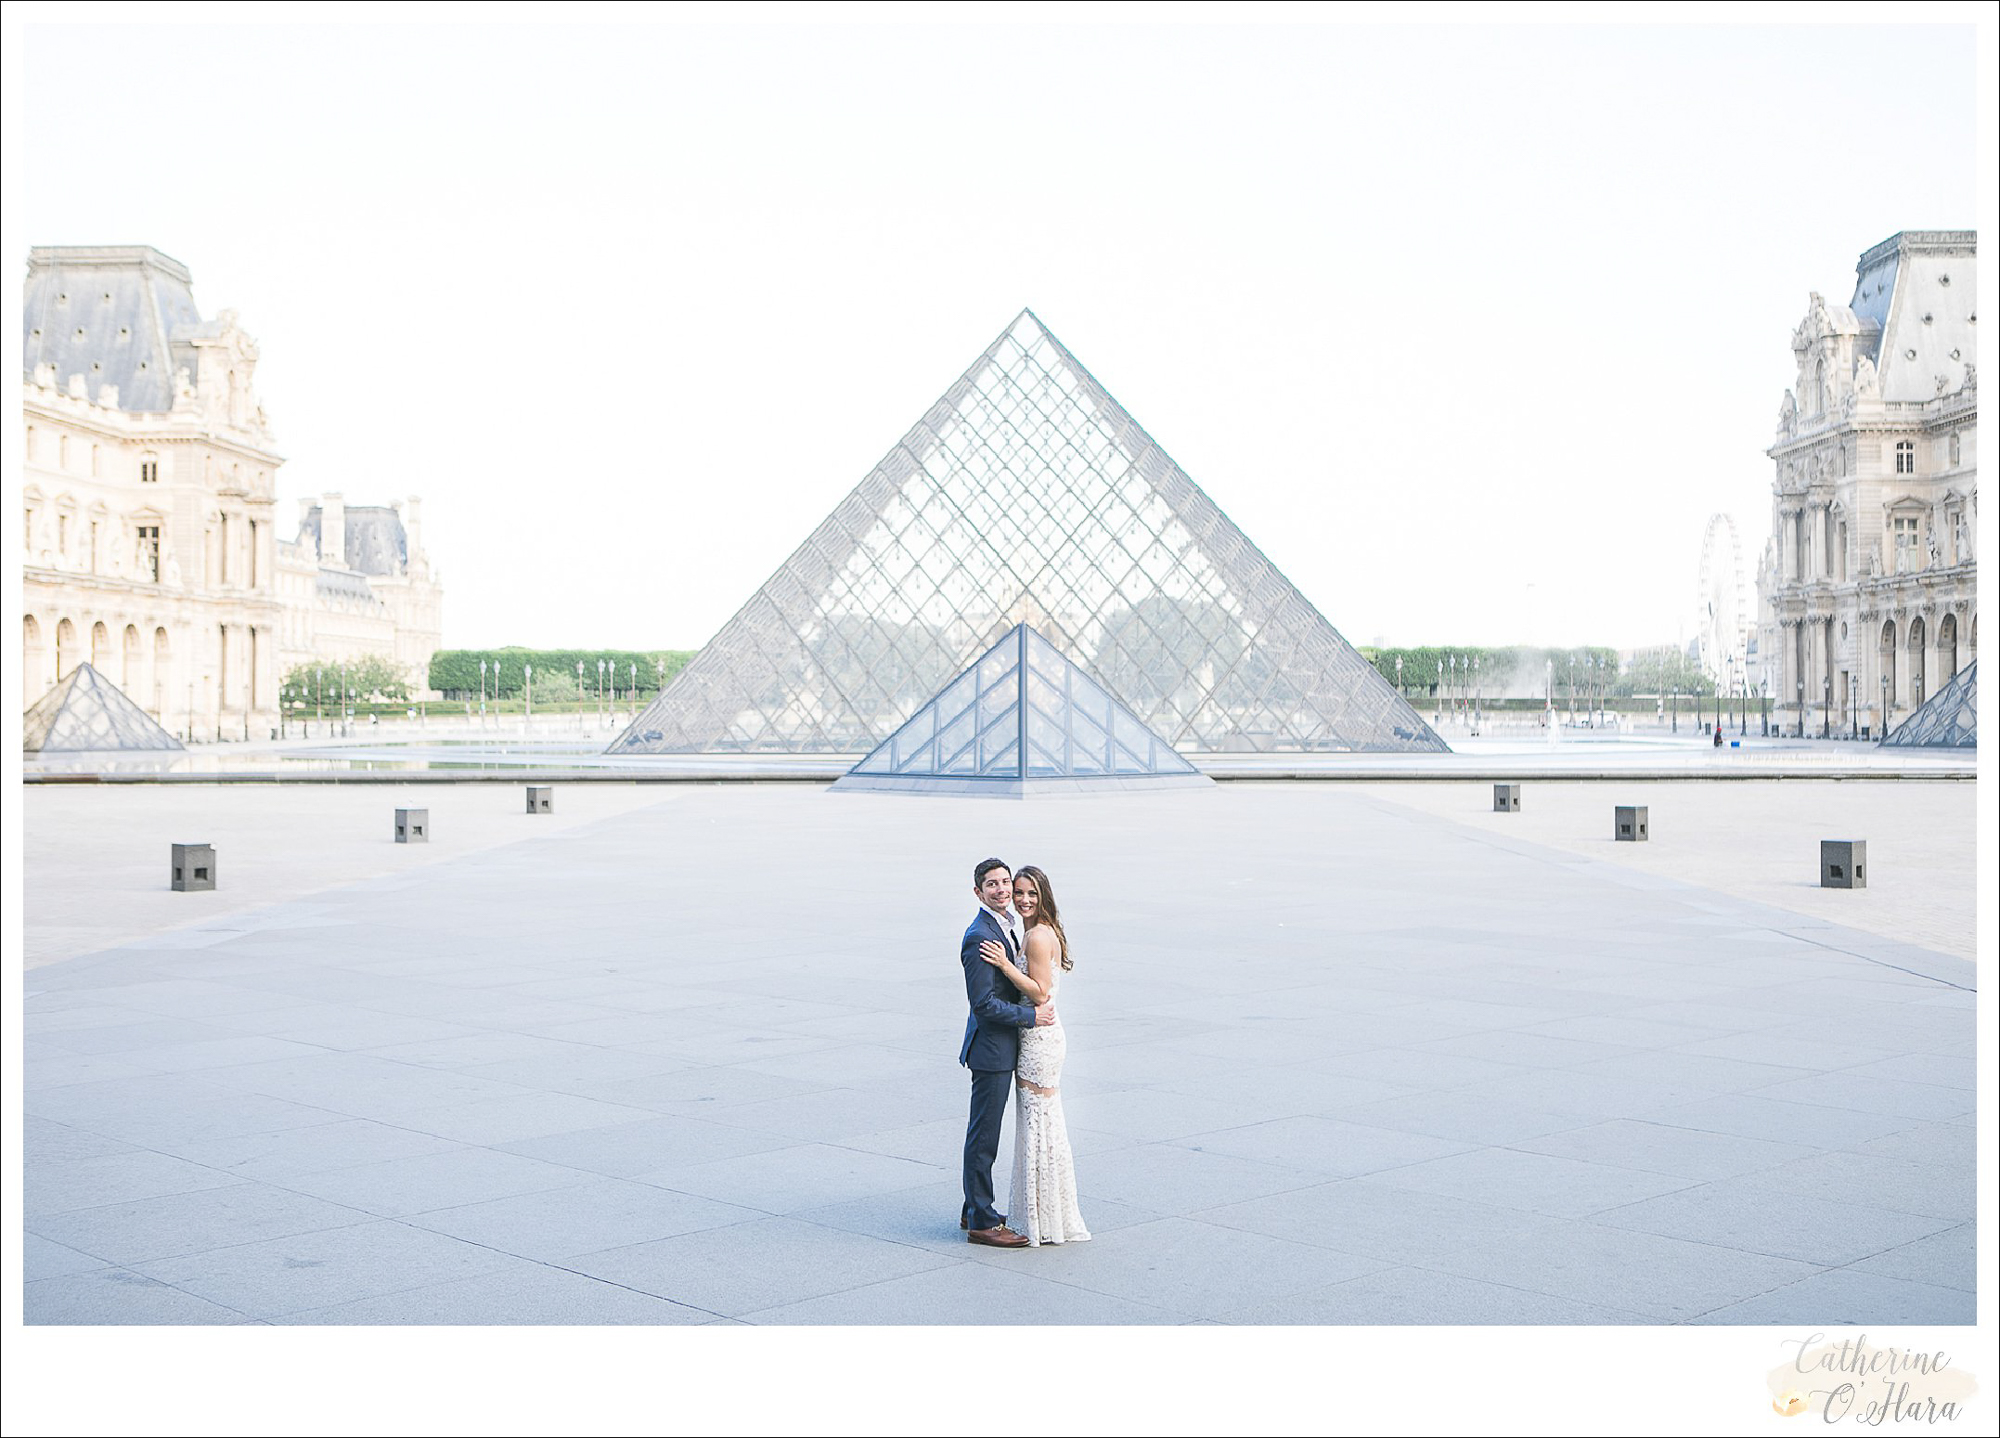 surprise proposal engagement photographer paris france-37.jpg